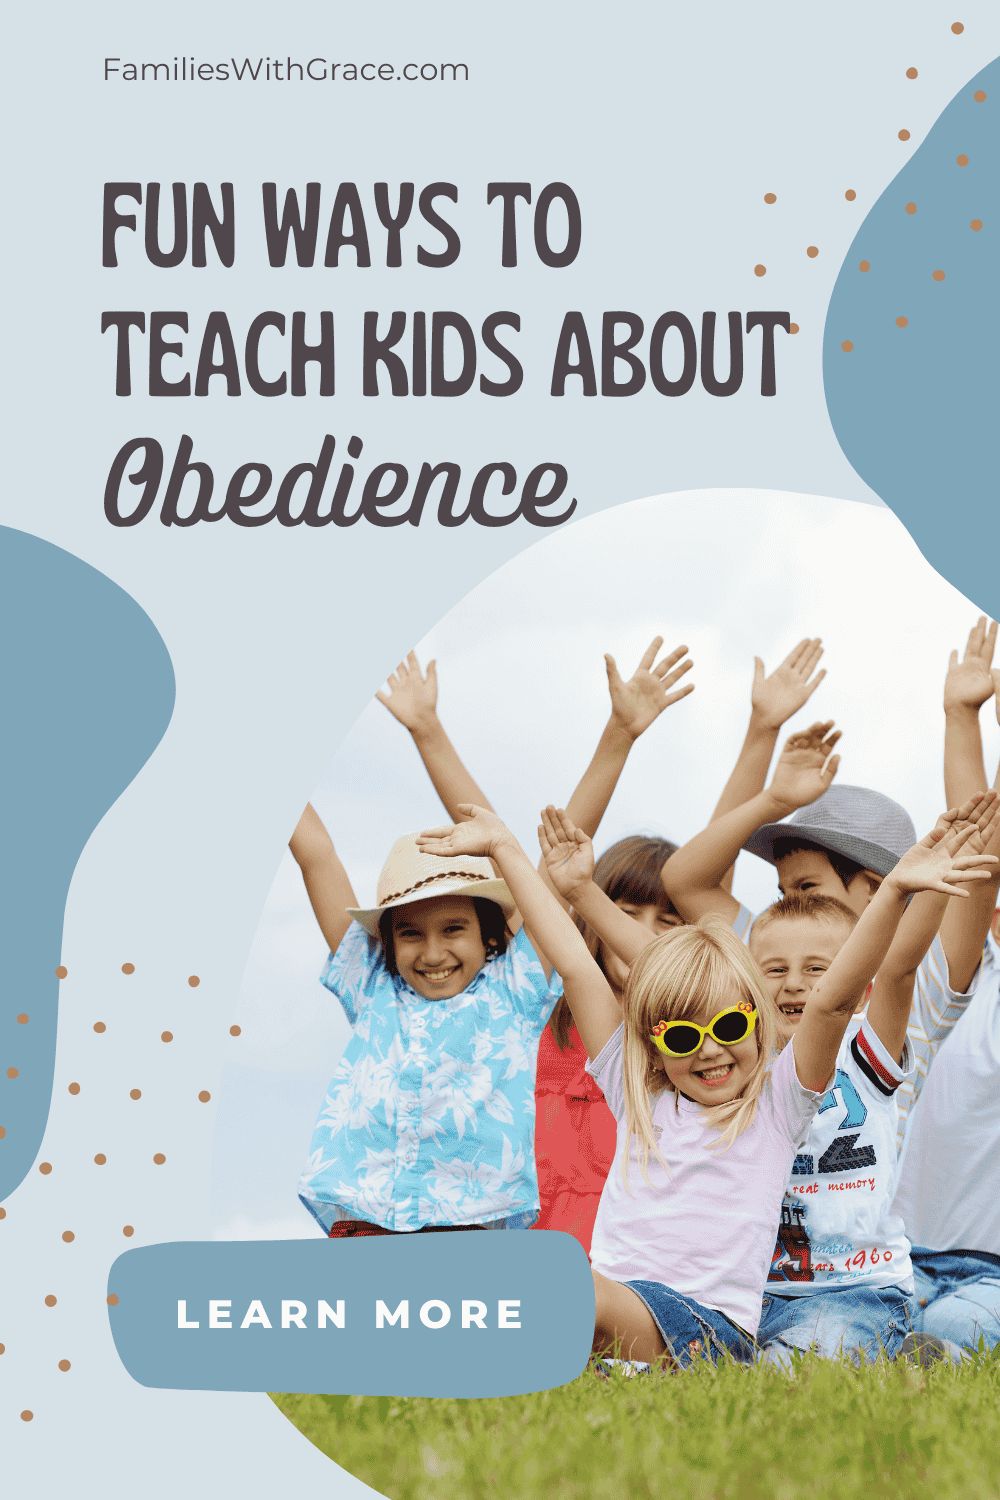 Fun ways to teach children about obedience